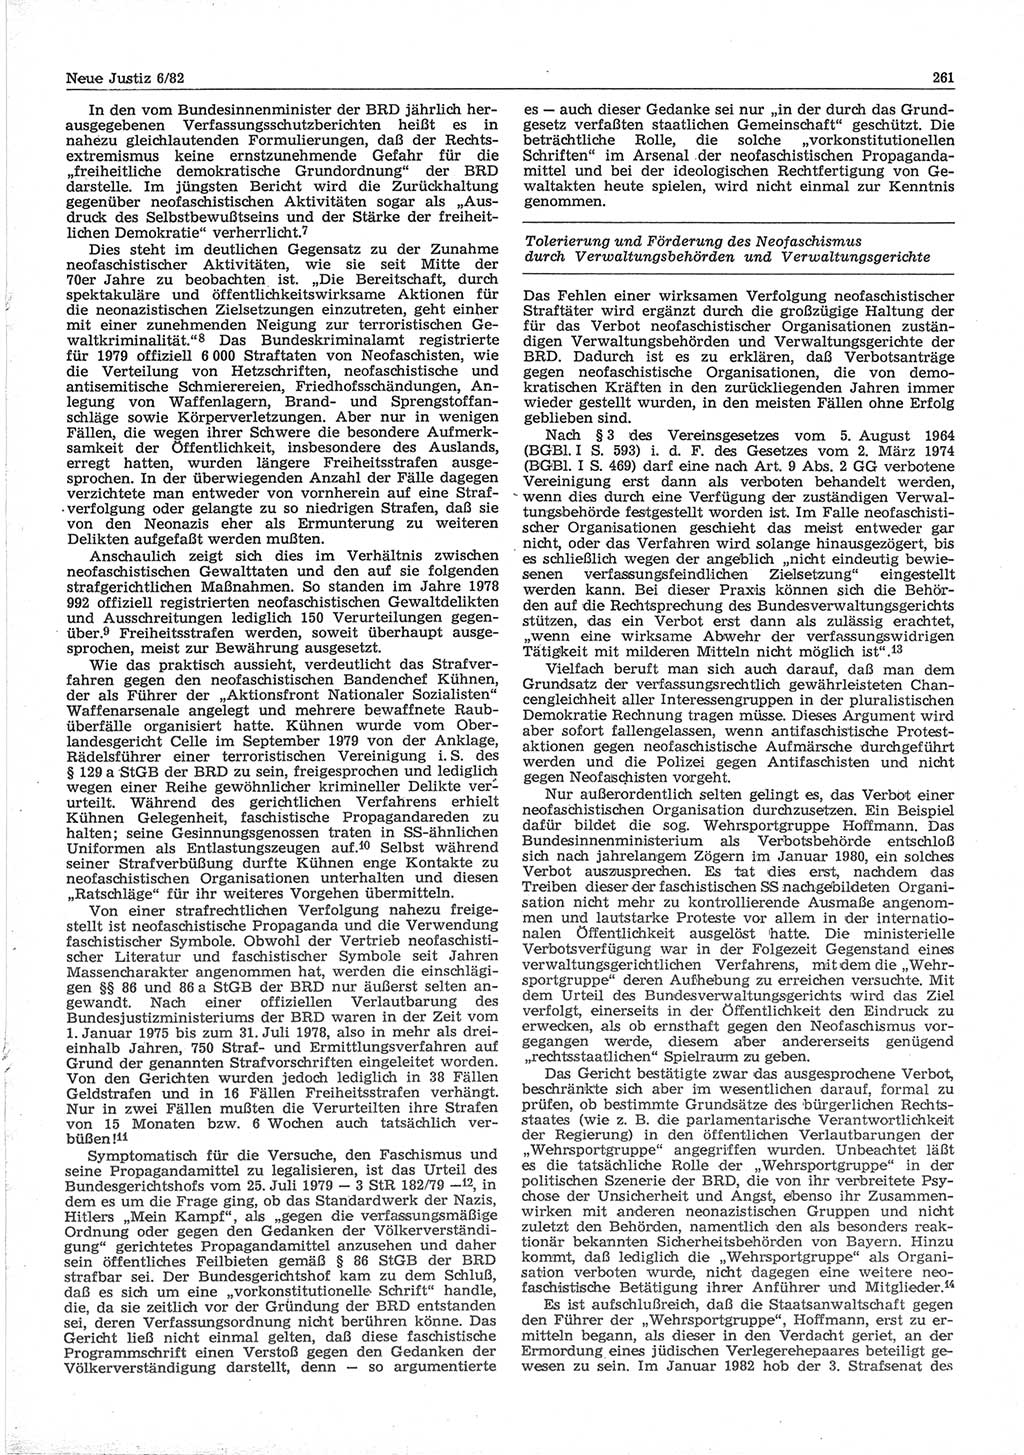 Neue Justiz (NJ), Zeitschrift für sozialistisches Recht und Gesetzlichkeit [Deutsche Demokratische Republik (DDR)], 36. Jahrgang 1982, Seite 261 (NJ DDR 1982, S. 261)